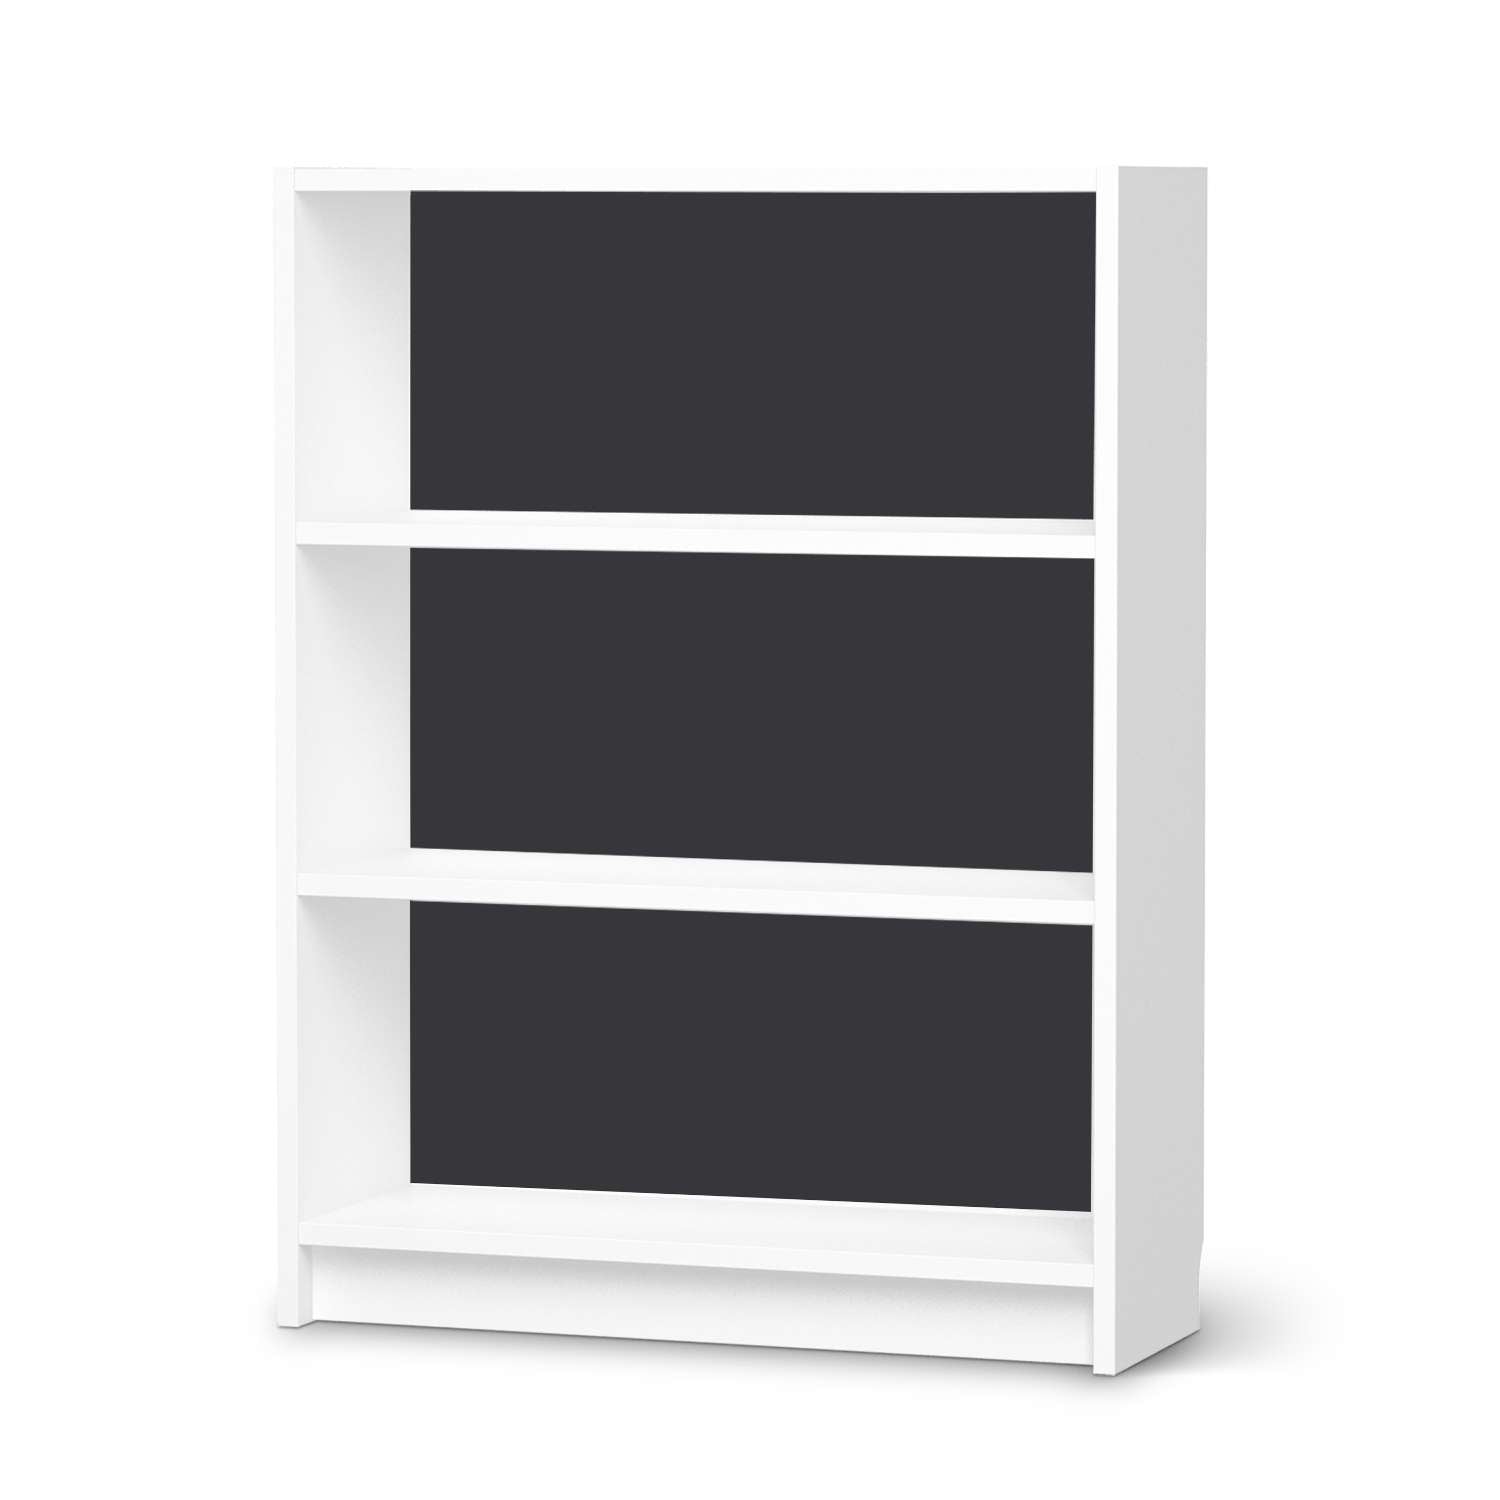 M?belfolie IKEA Billy Regal 3 F?cher - Design: Grau Dark von creatisto